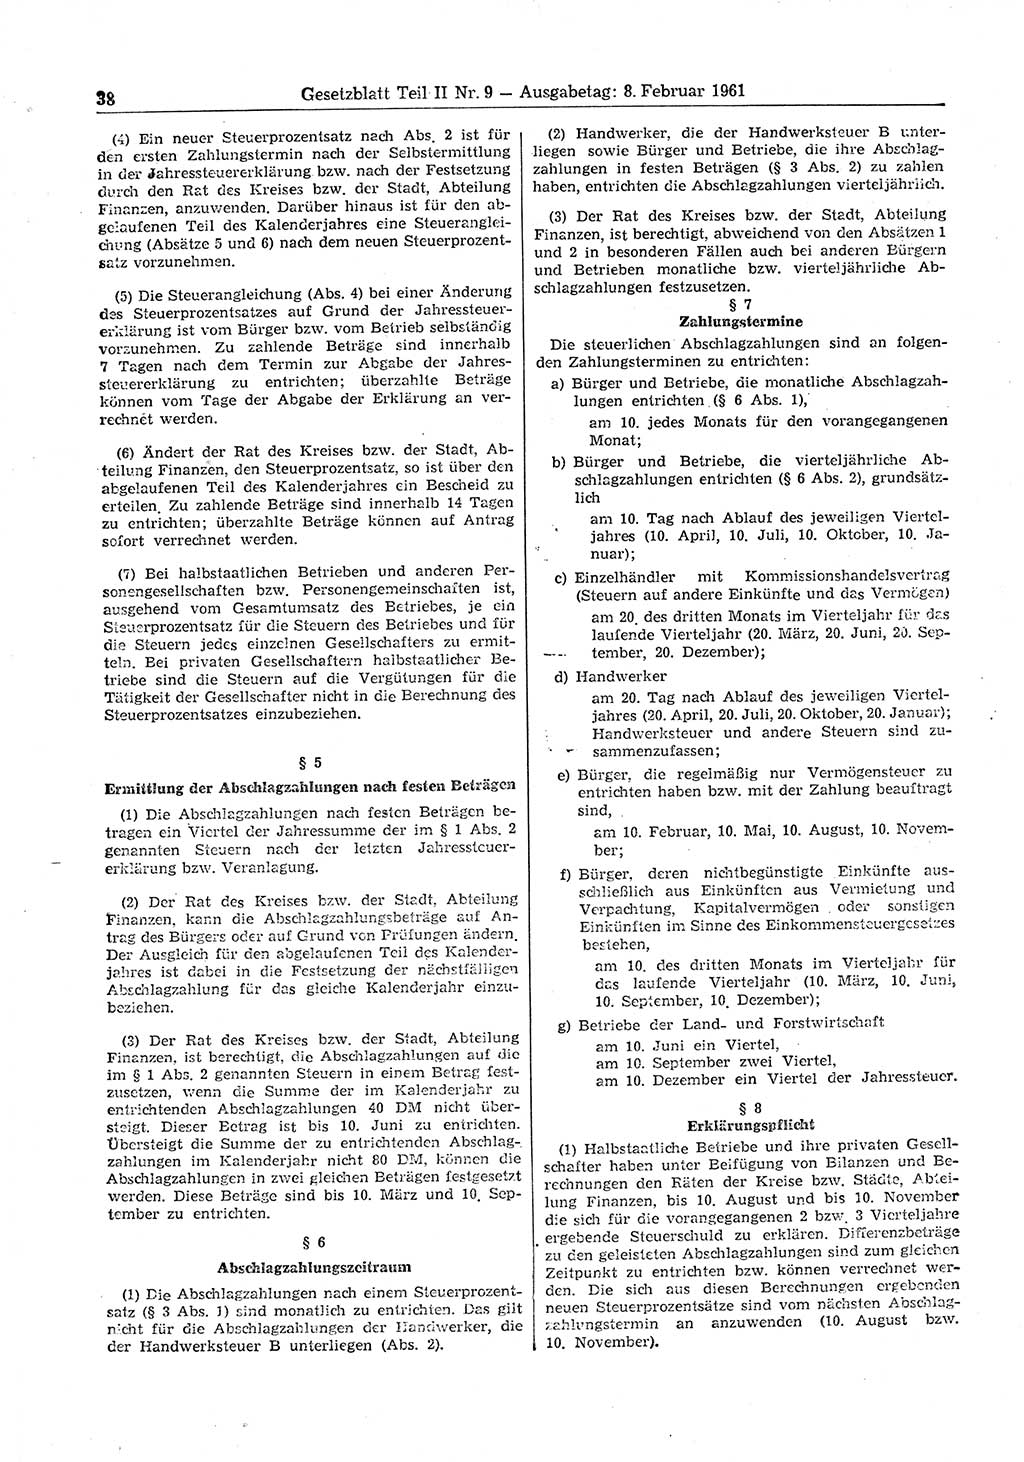 Gesetzblatt (GBl.) der Deutschen Demokratischen Republik (DDR) Teil ⅠⅠ 1961, Seite 38 (GBl. DDR ⅠⅠ 1961, S. 38)